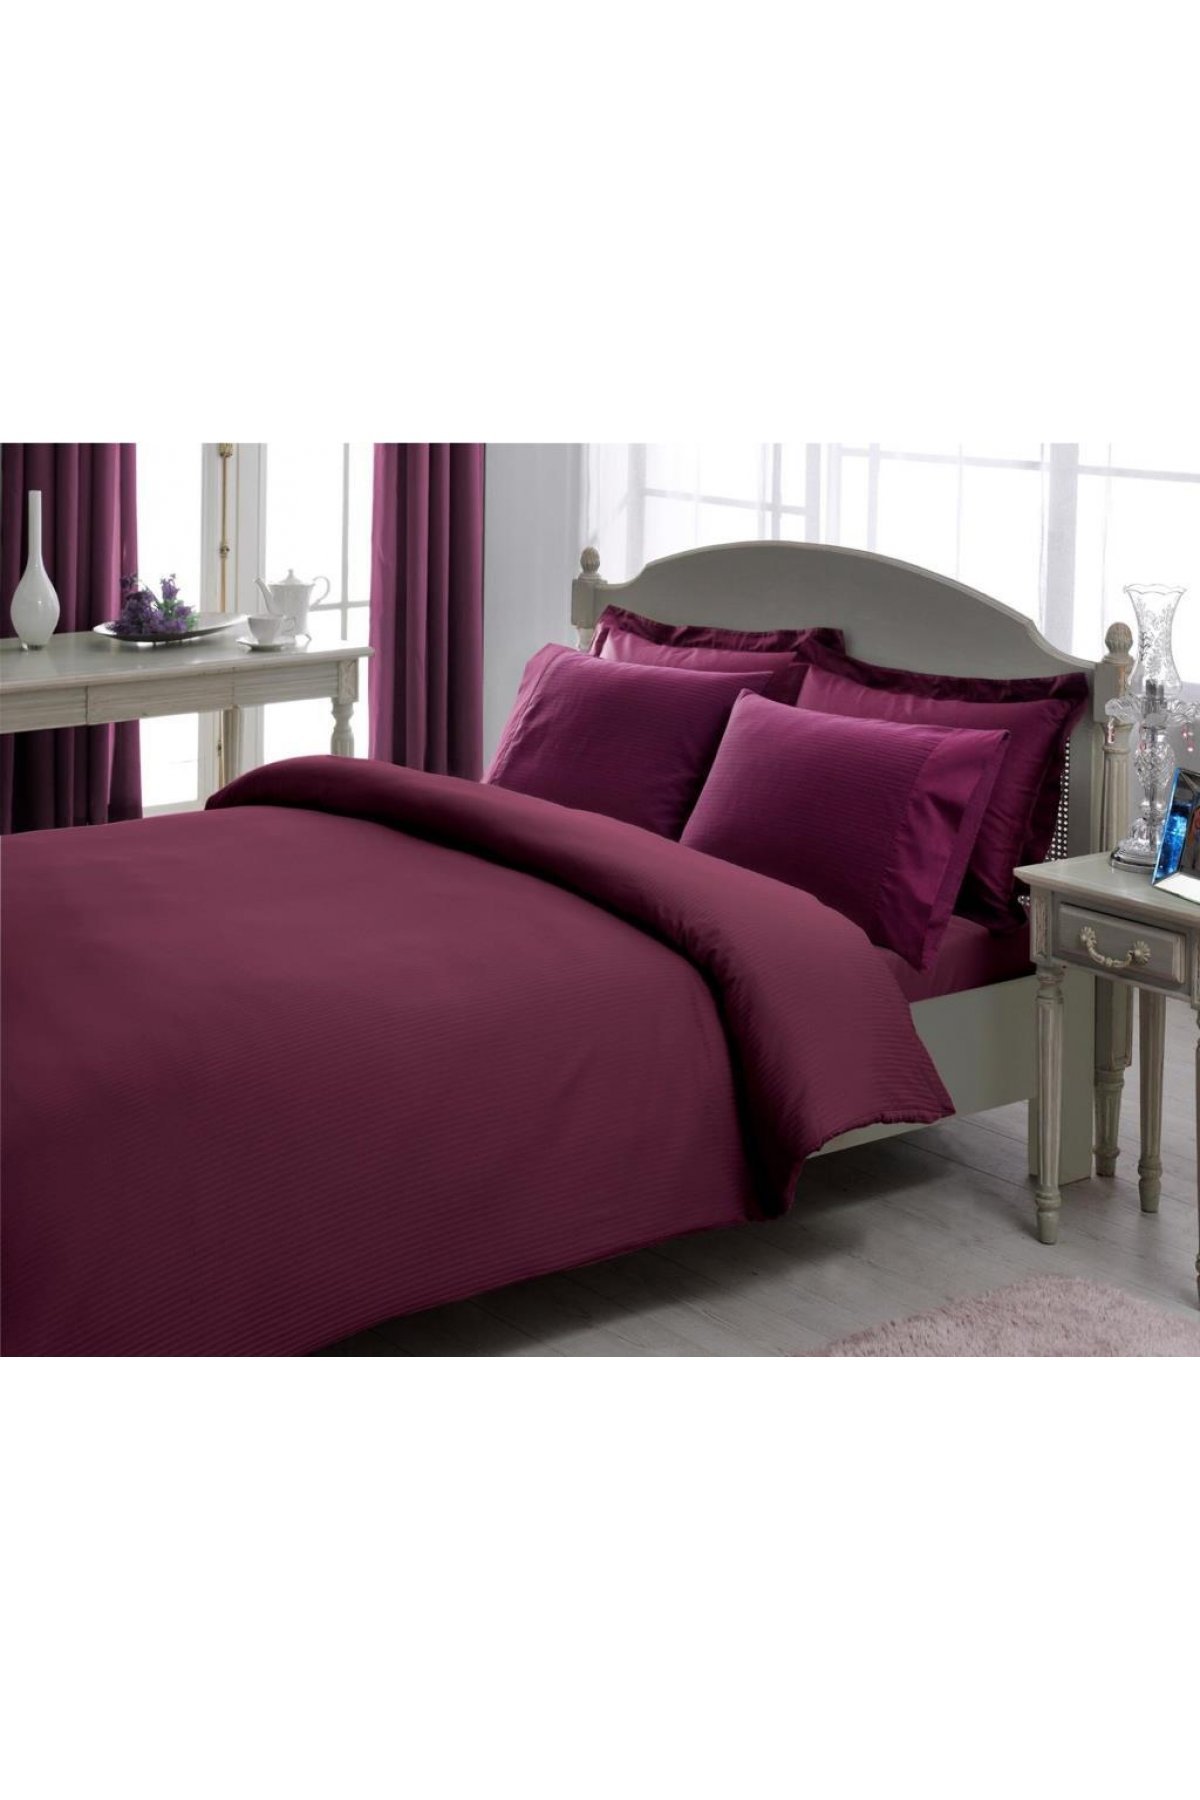 Bedding-Violet